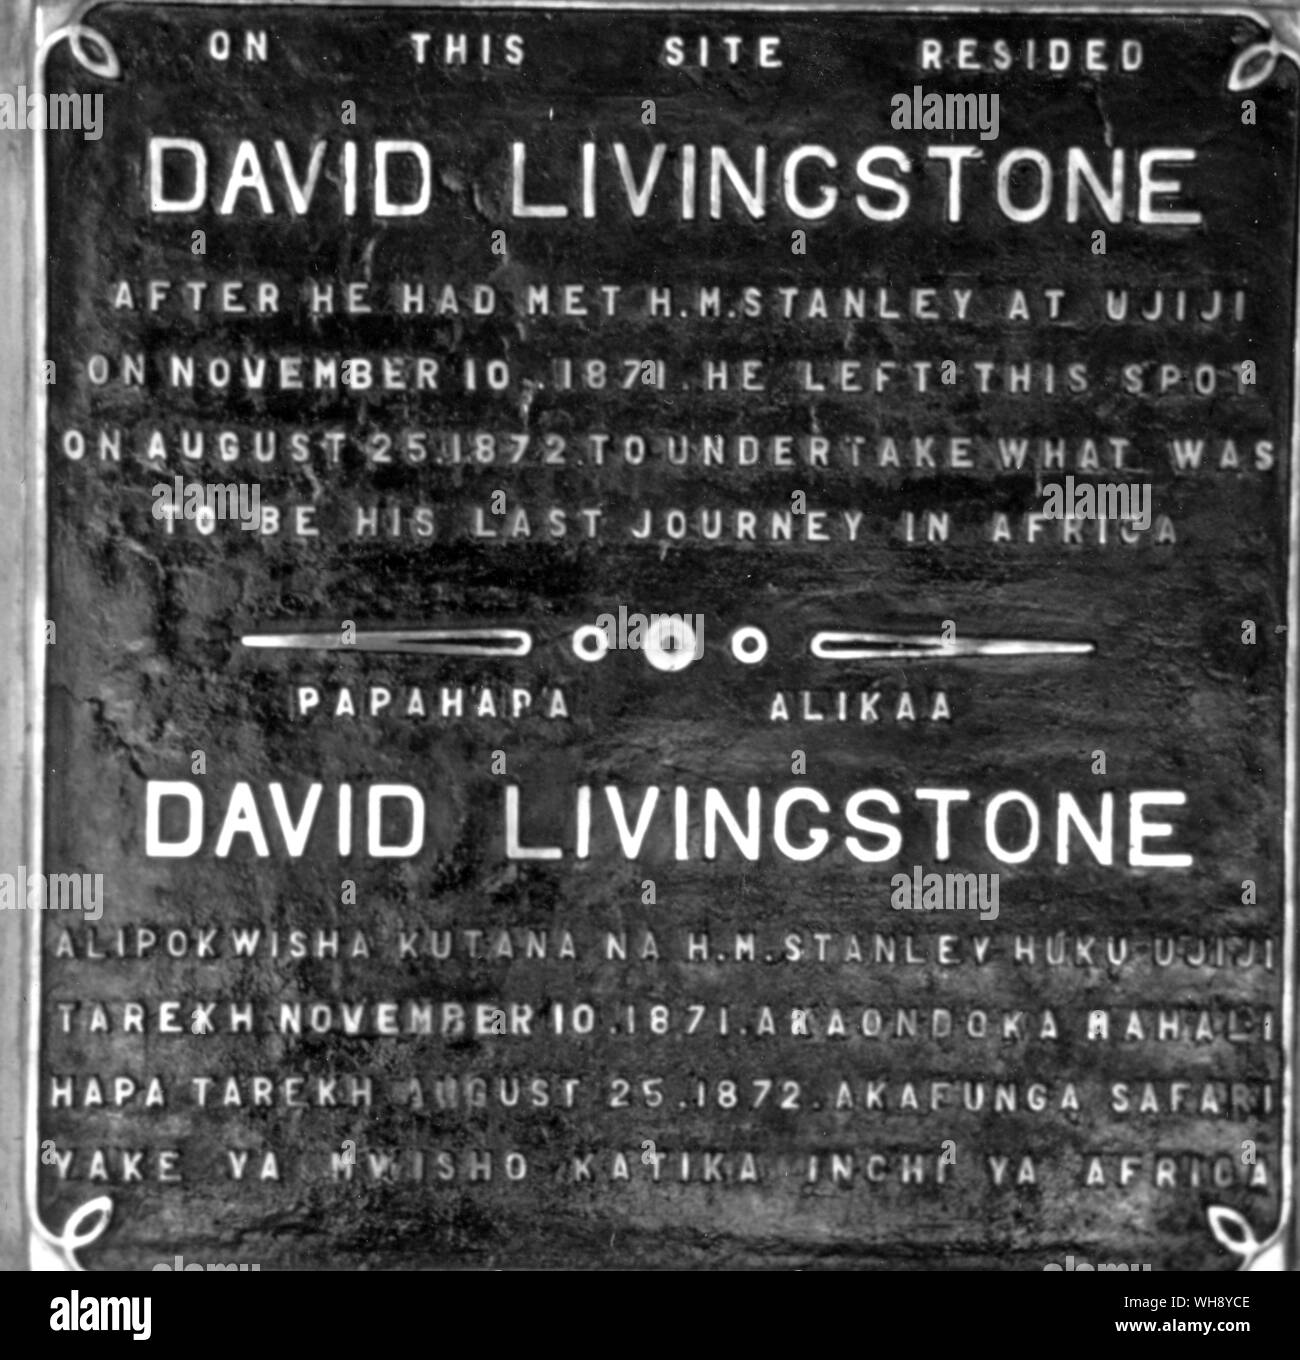 Zwei Plaketten Kennzeichnung Livingstone's Abschied von Stanley am 14. März 1872, und der Ort Livingstone's home nach seinem Treffen mit Stanley bis August 25th, 1872, an dem er sich auf seine letzte Reise. Stockfoto